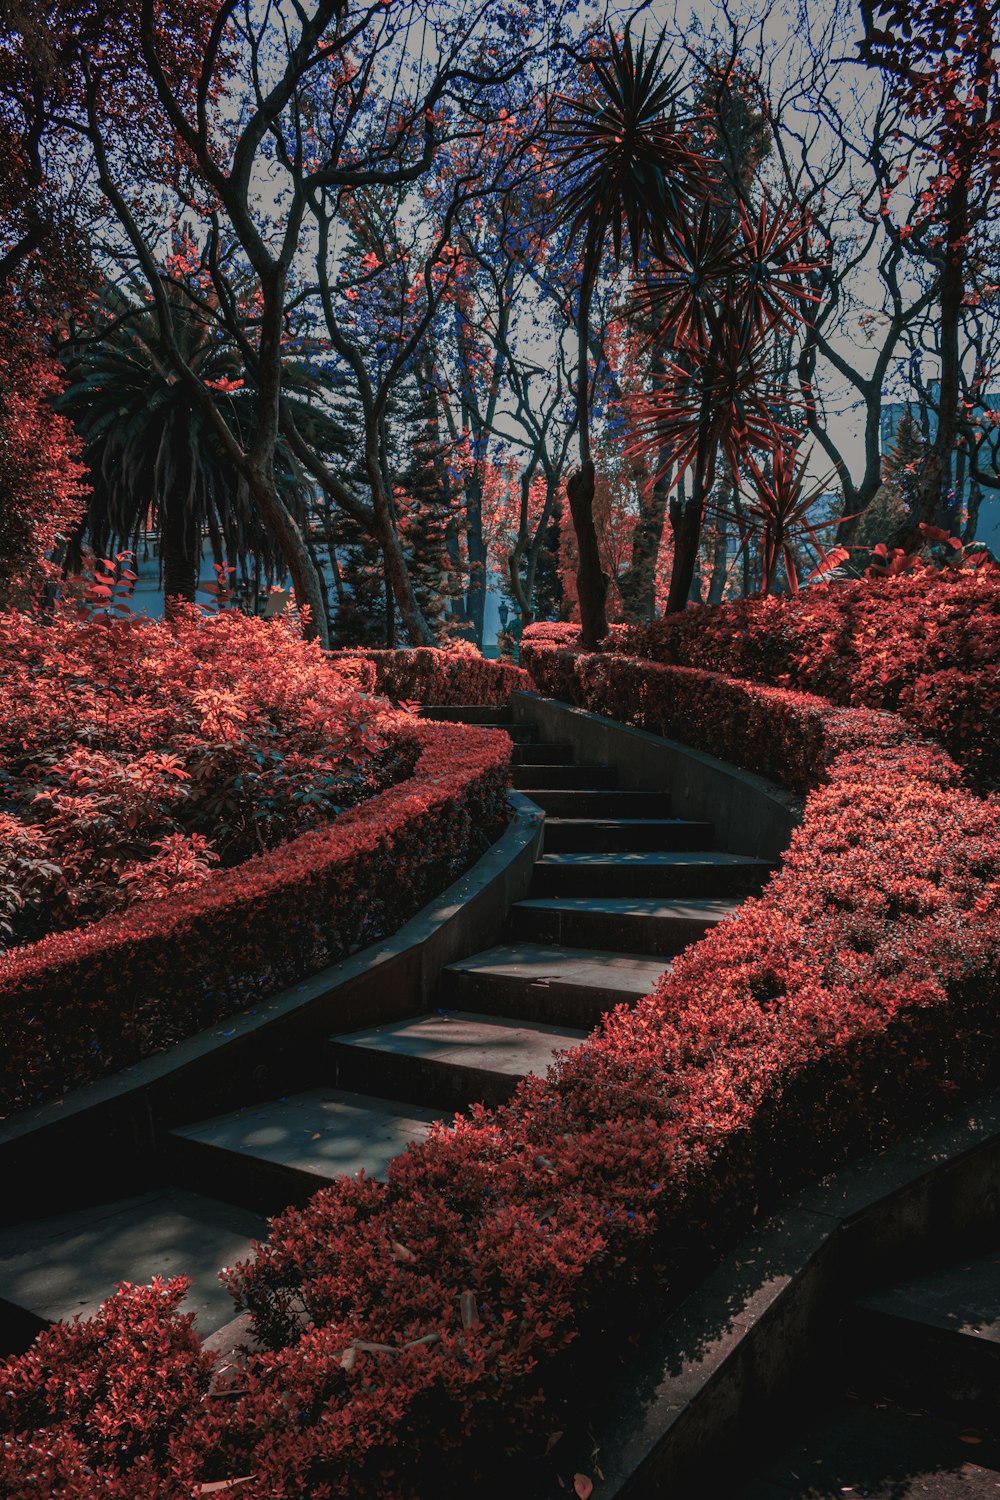 무성한 녹색 공원으로 이어지는 일련의 계단